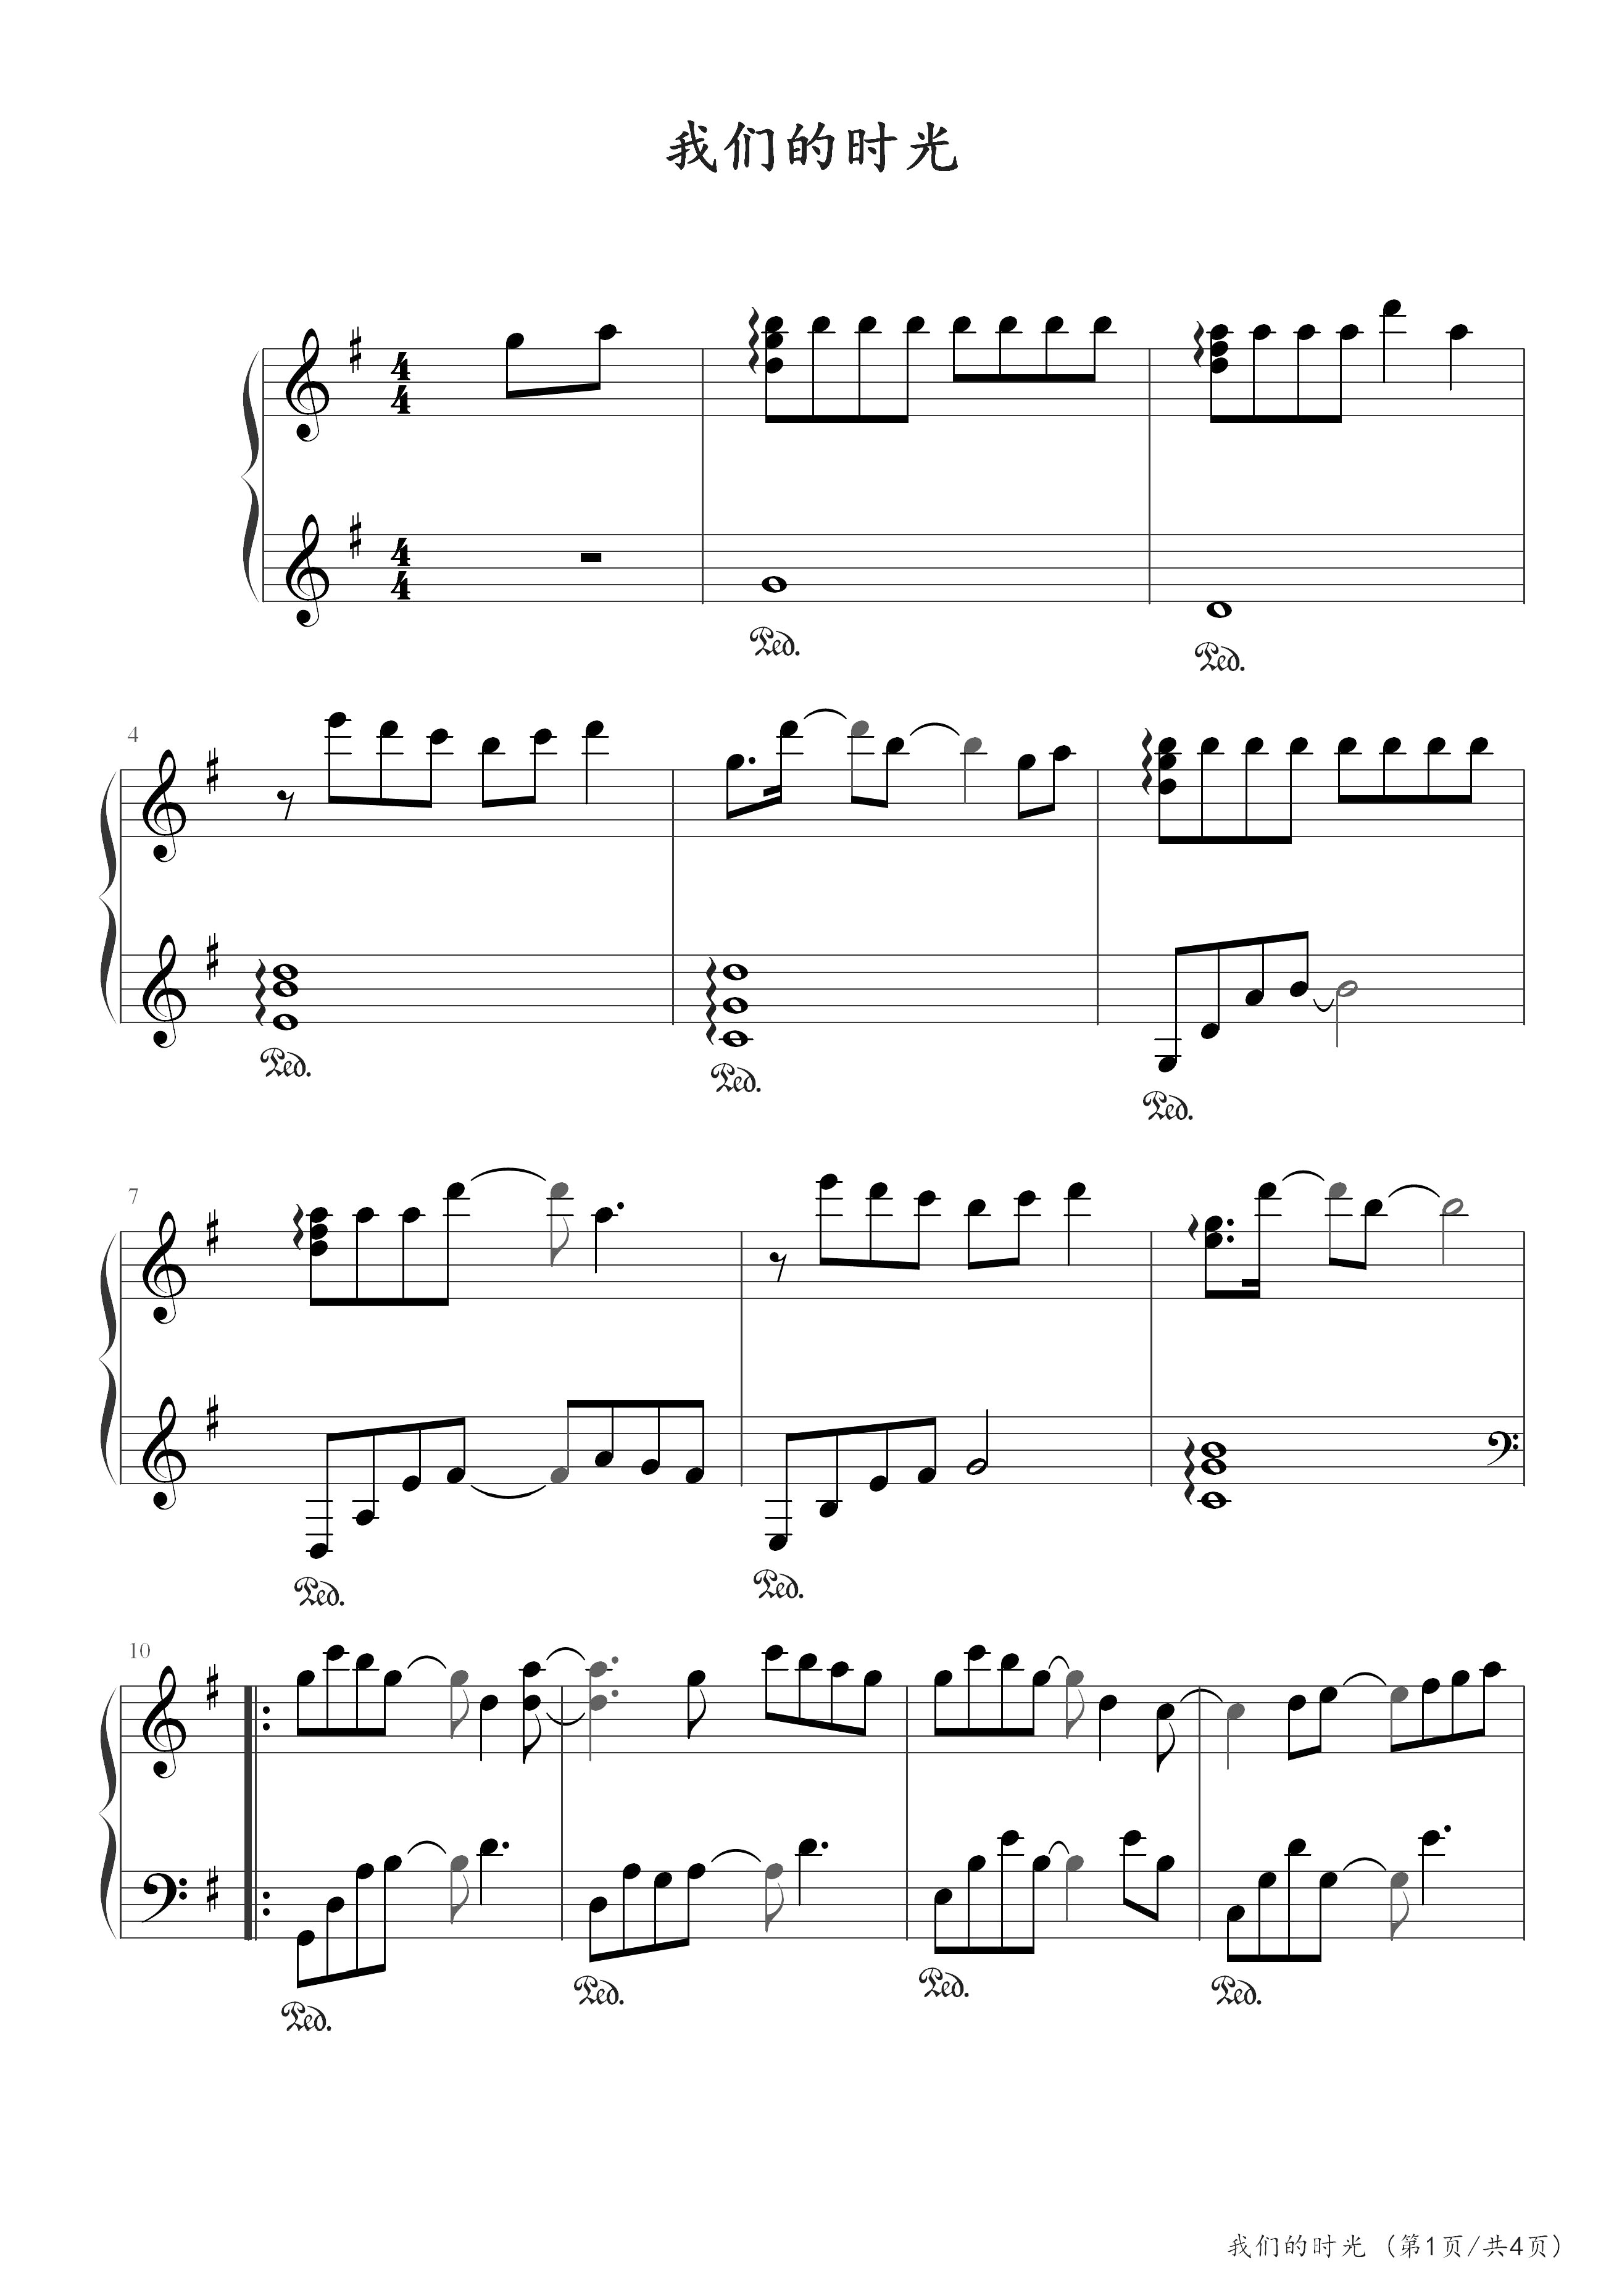 《我们的时光》钢琴谱 - TFBOYS简单版C调和弦弹唱伴奏无旋律 - 加歌词 - 钢琴简谱